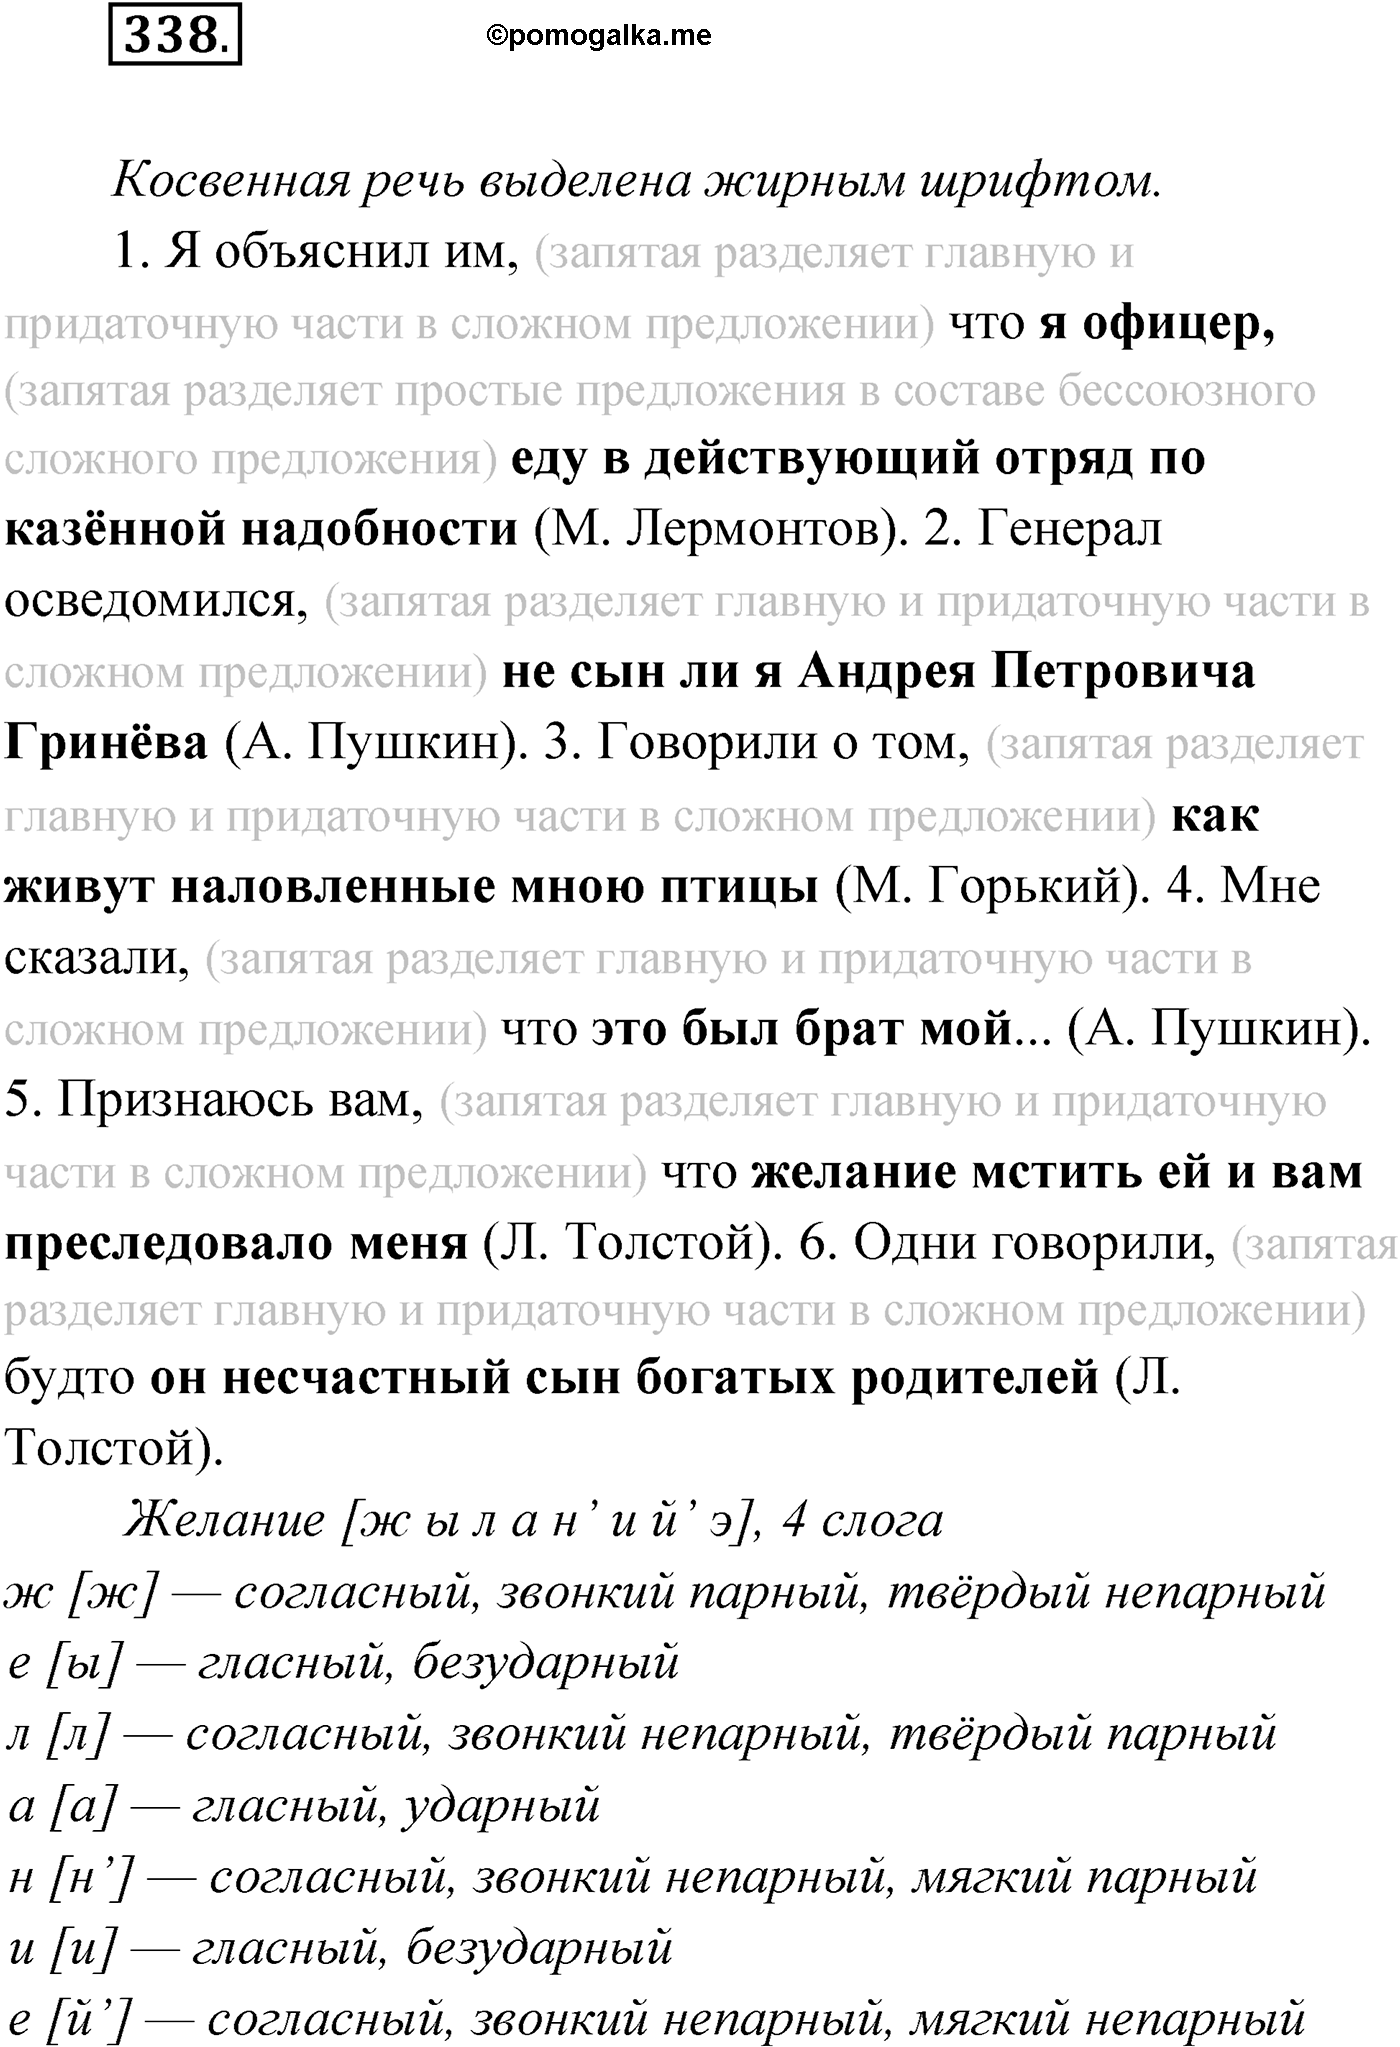 упражнение №338 русский язык 9 класс Мурина 2019 год